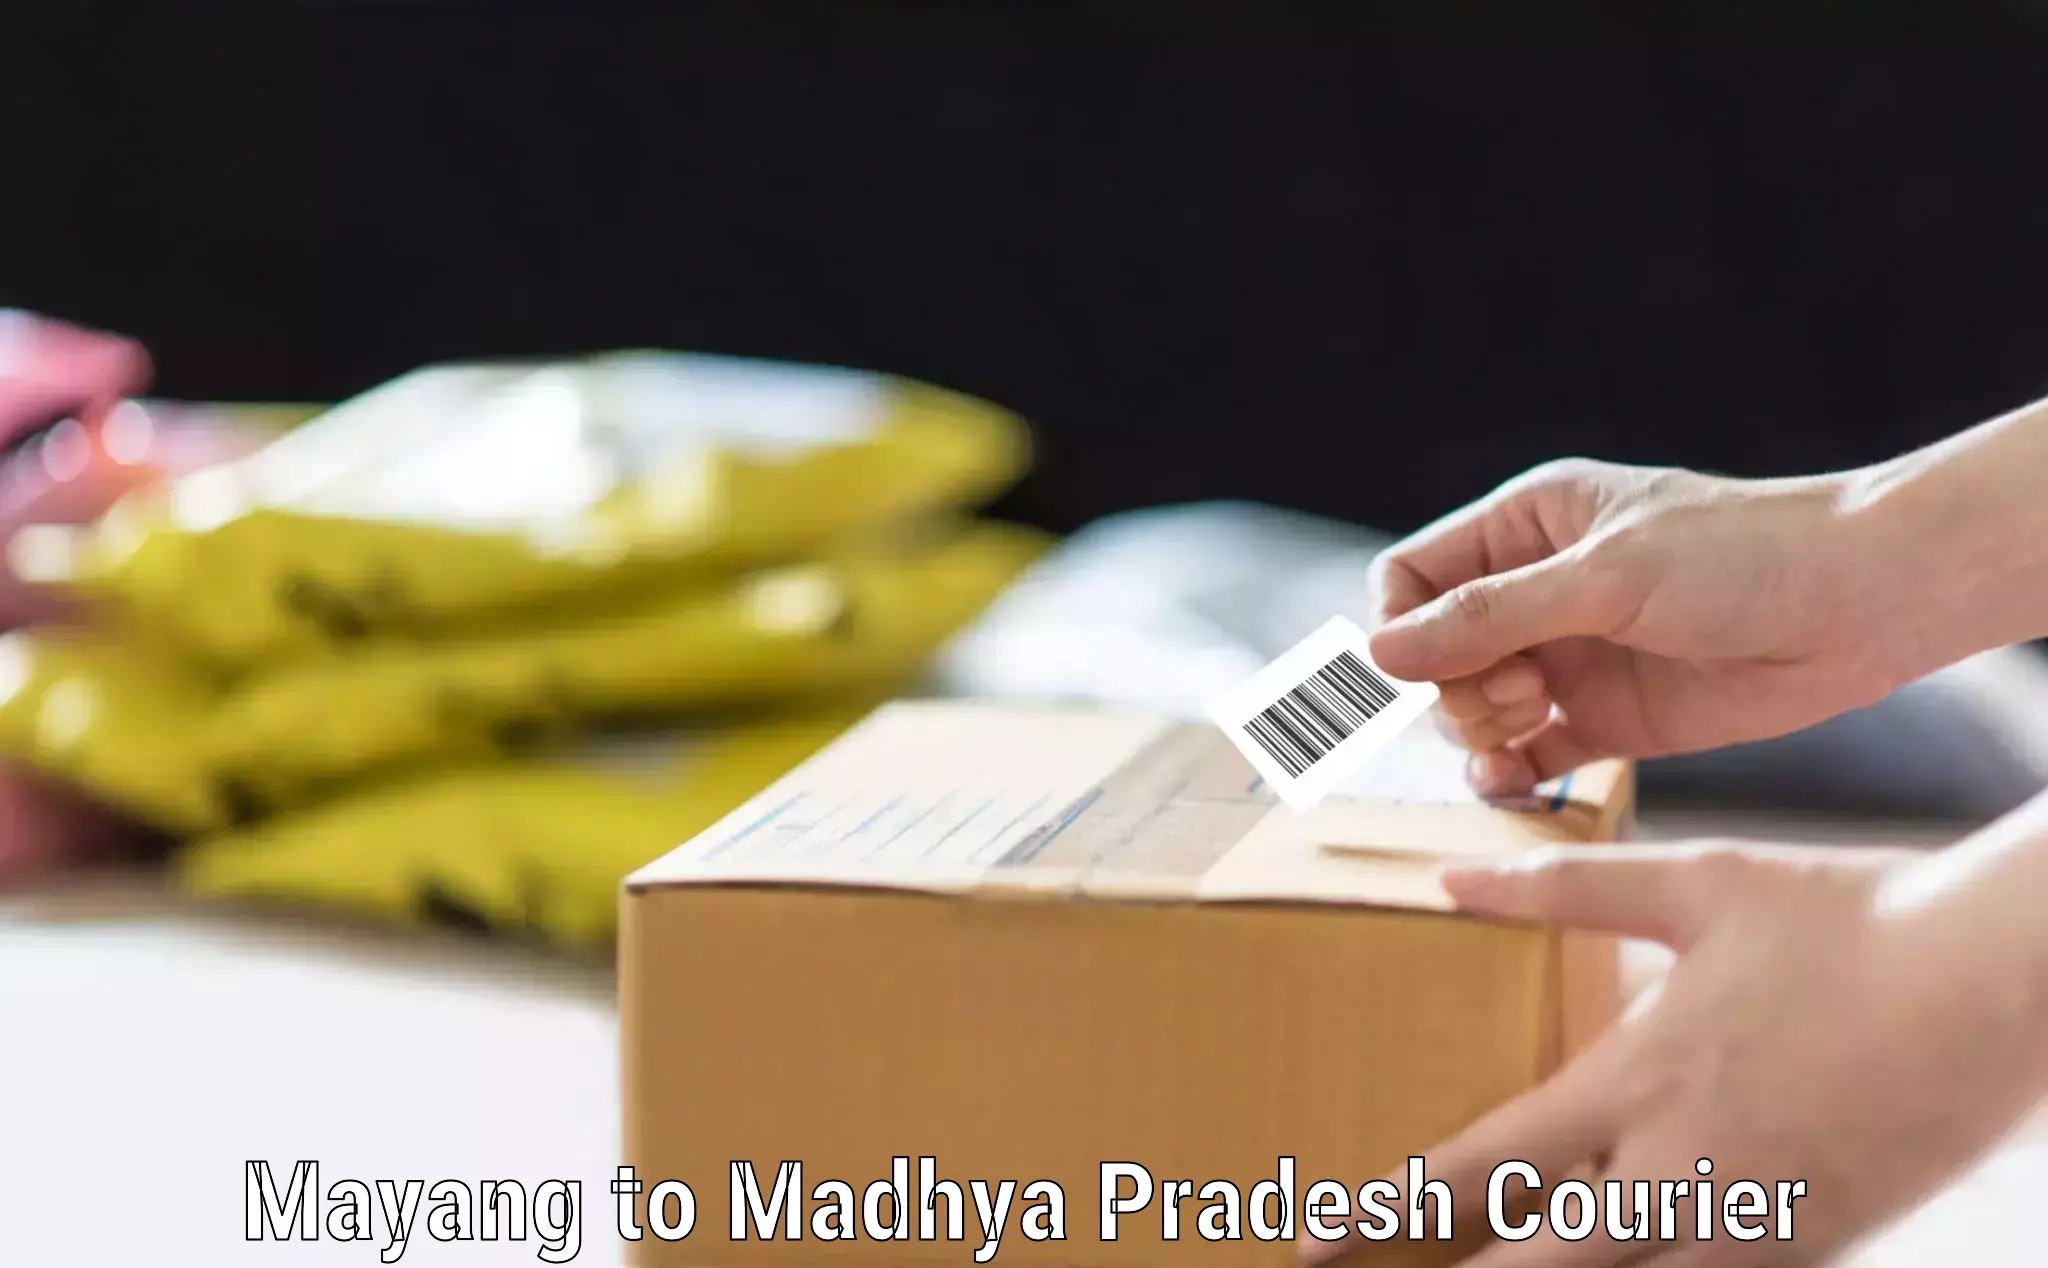 Luggage transport company Mayang to Madhya Pradesh